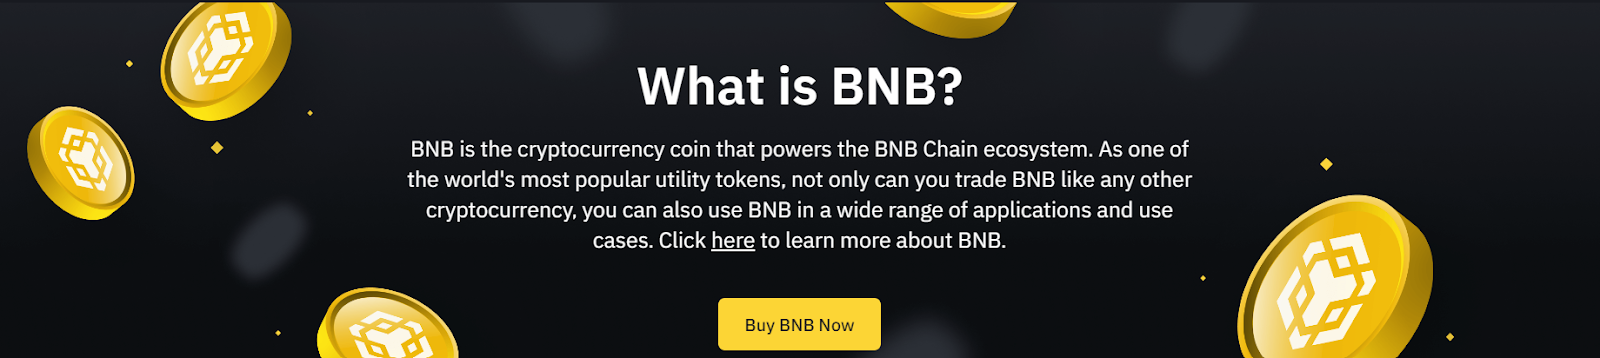 beste langsiktige kryptoinvesteringer - BNB